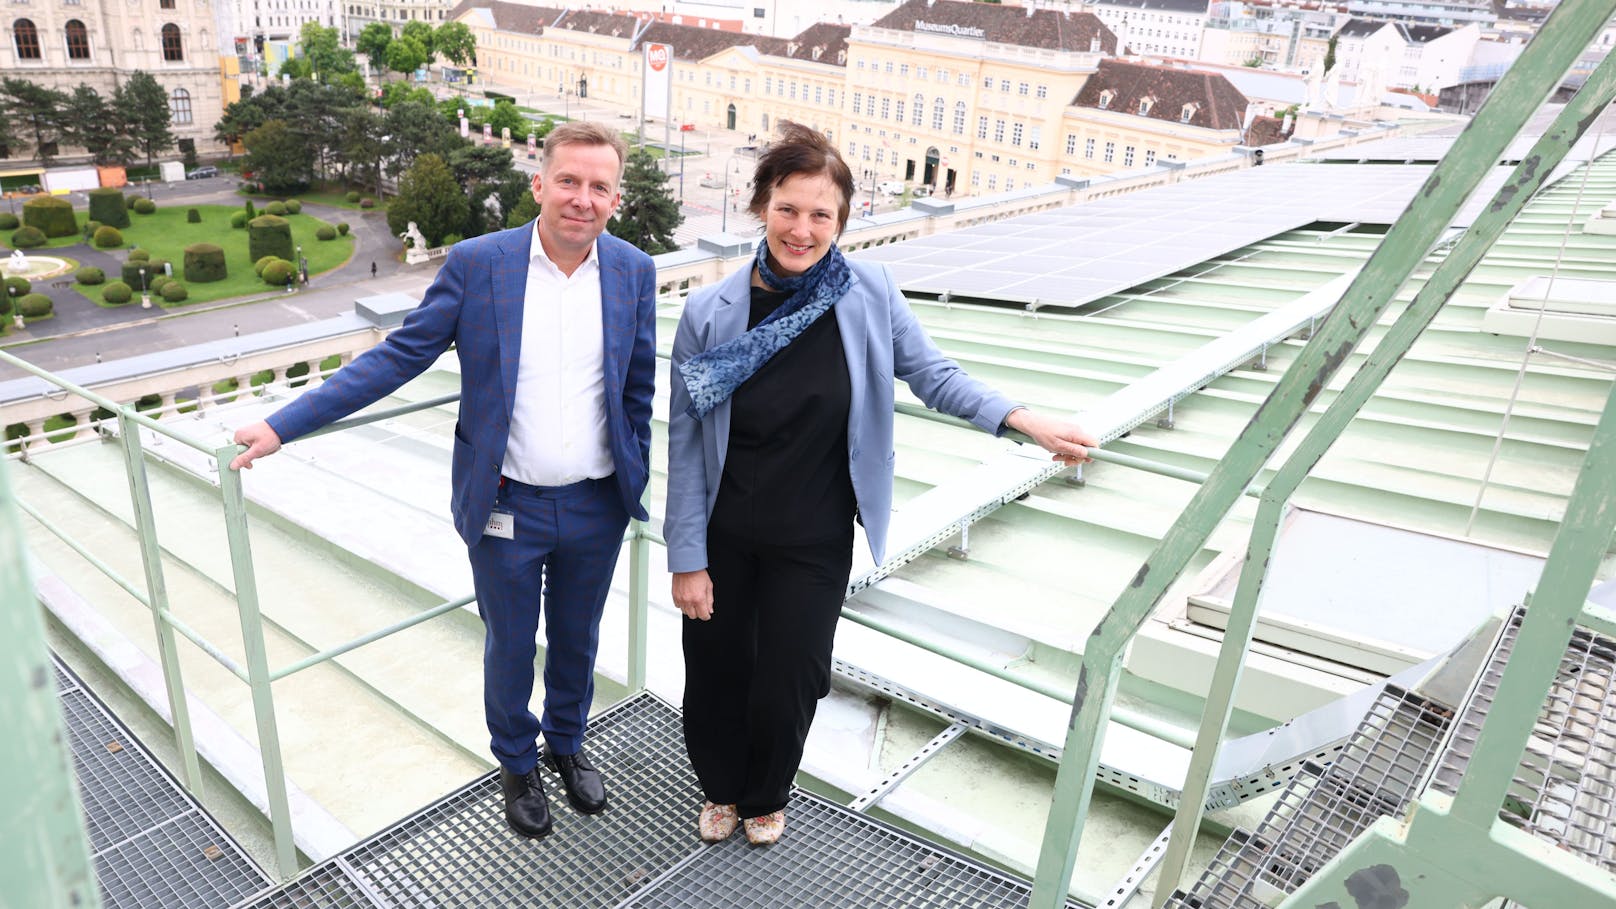 NHM-Generaldirektorin Katrin Vohland und Christian Fischer, Leiter der Abteilung Gebäude &amp; Sicherheit im NHM, am Dach des Museums.